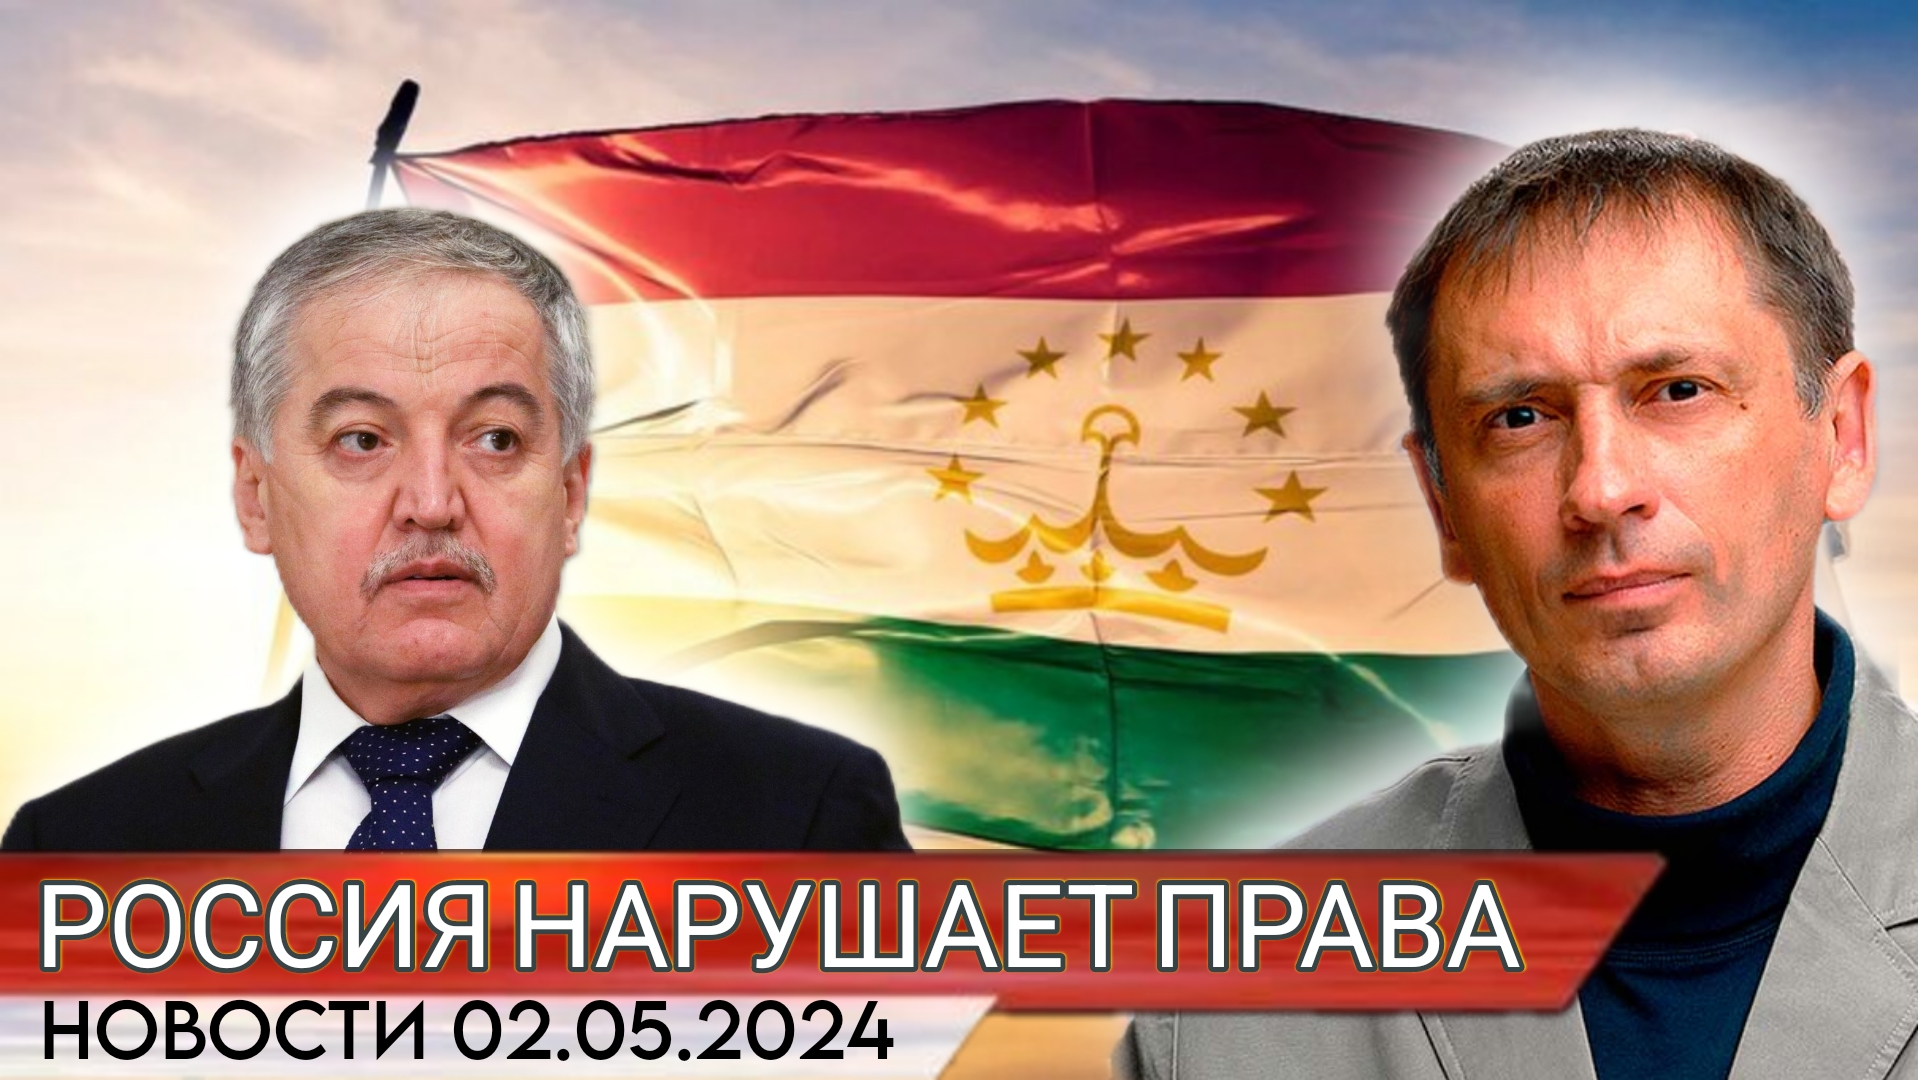 МИД Таджикистана обвинил Россию в нарушении прав граждан республики | БРЕКОТИН